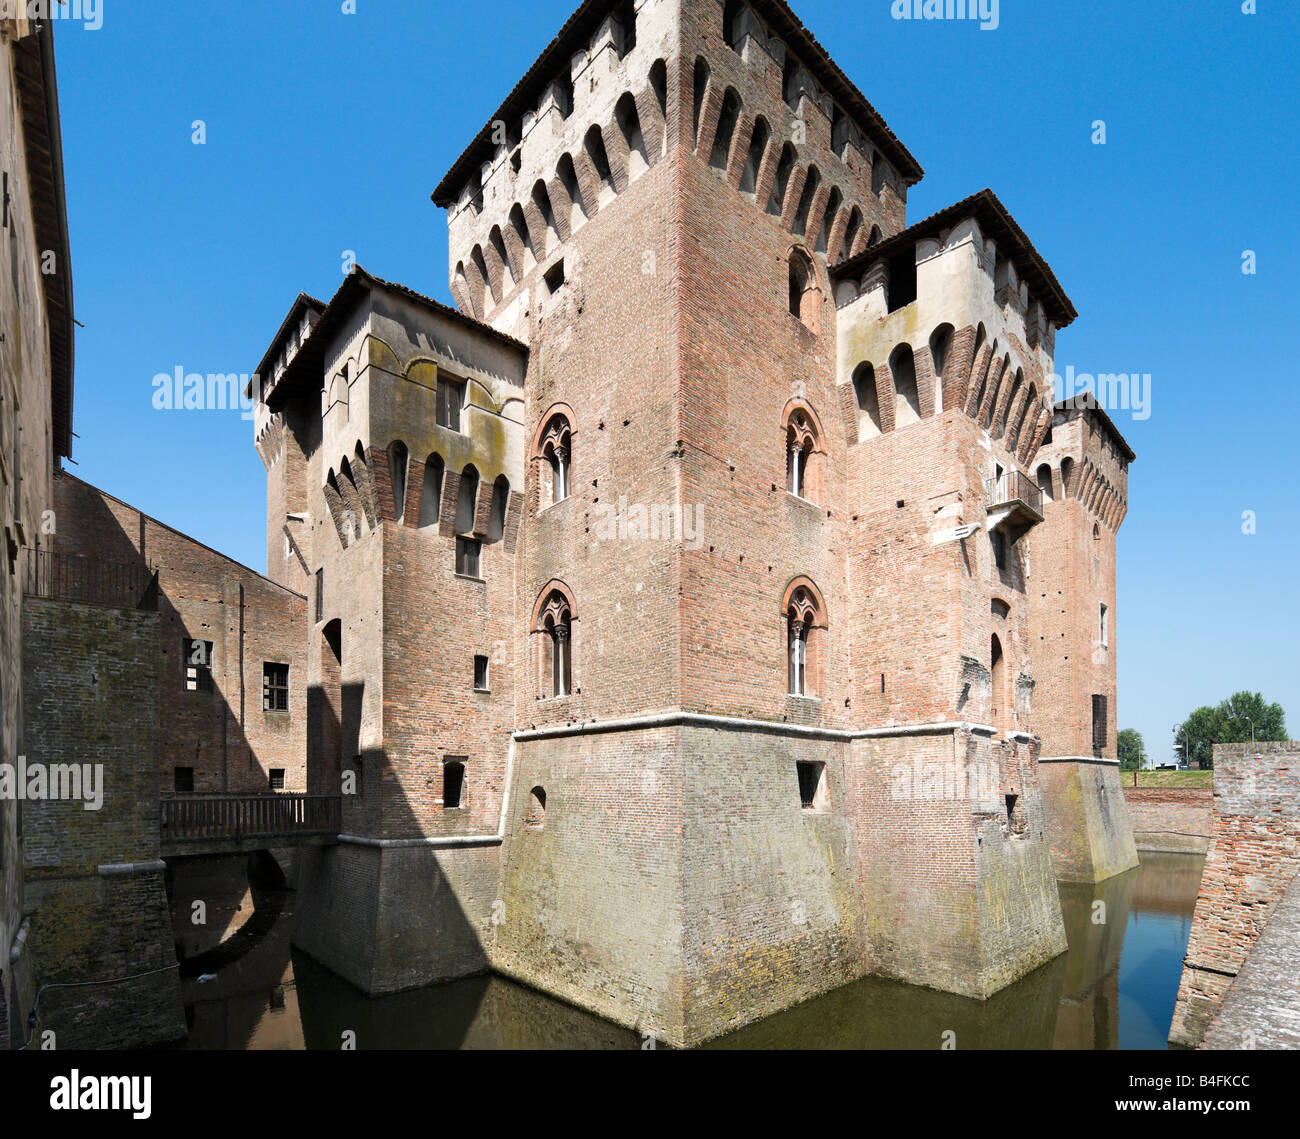 Le Castello di San Giorgio attaché à le palais des Doges, Mantoue (Mantova), Lombardie, Italie Banque D'Images